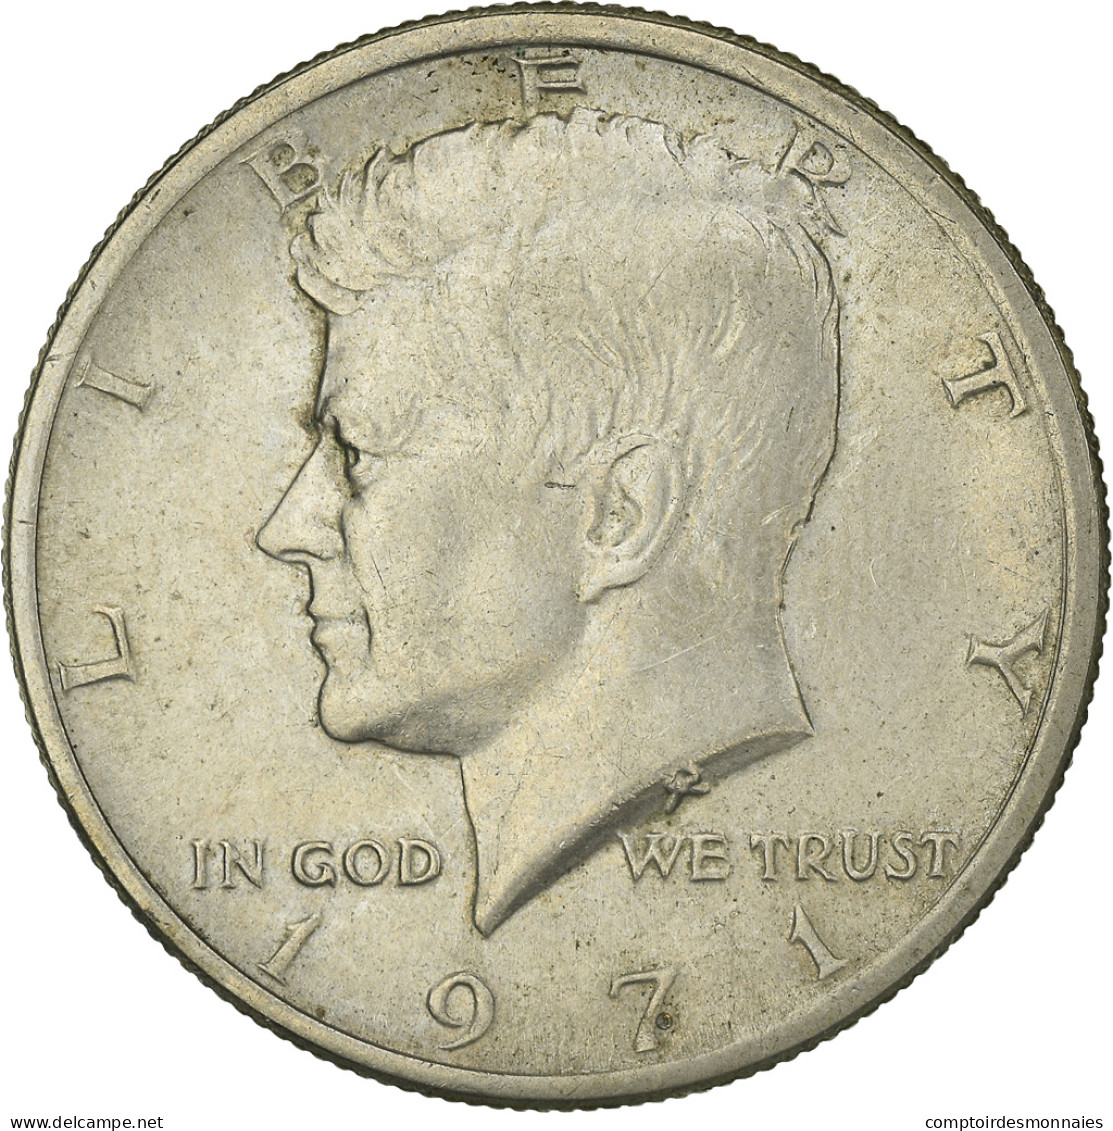 Monnaie, États-Unis, Kennedy Half Dollar, Half Dollar, 1971, U.S. Mint - 1964-…: Kennedy